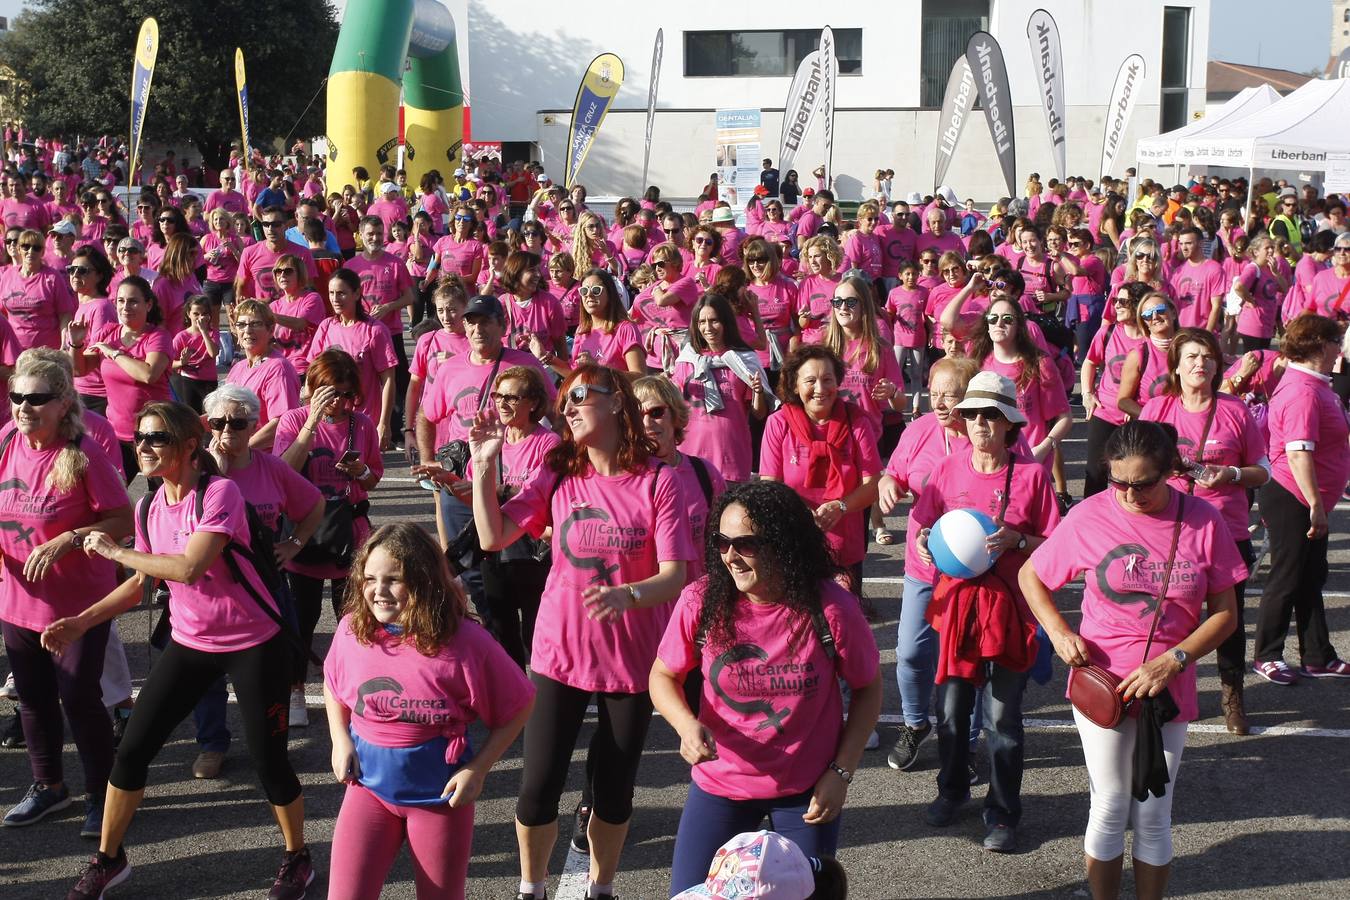 La Carrera de la Mujer de Bezana batió este sábado su récord de participación, con más de 4.000 personas